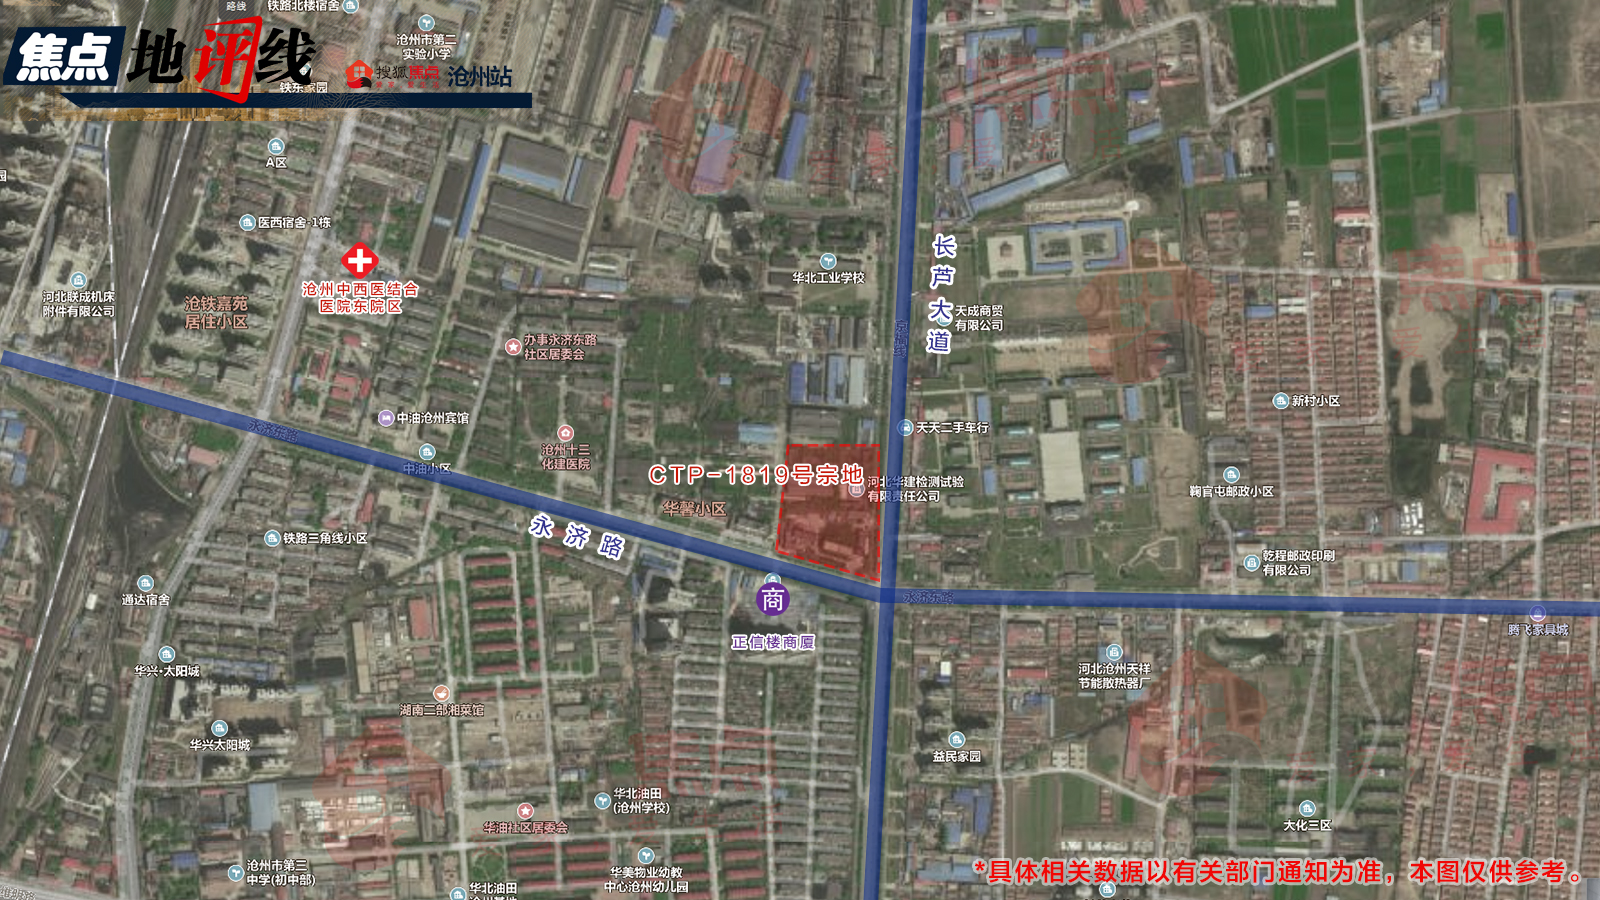 该地块区位条件优越,位于沧州西部新城,临近一场五馆,高铁西站,现有